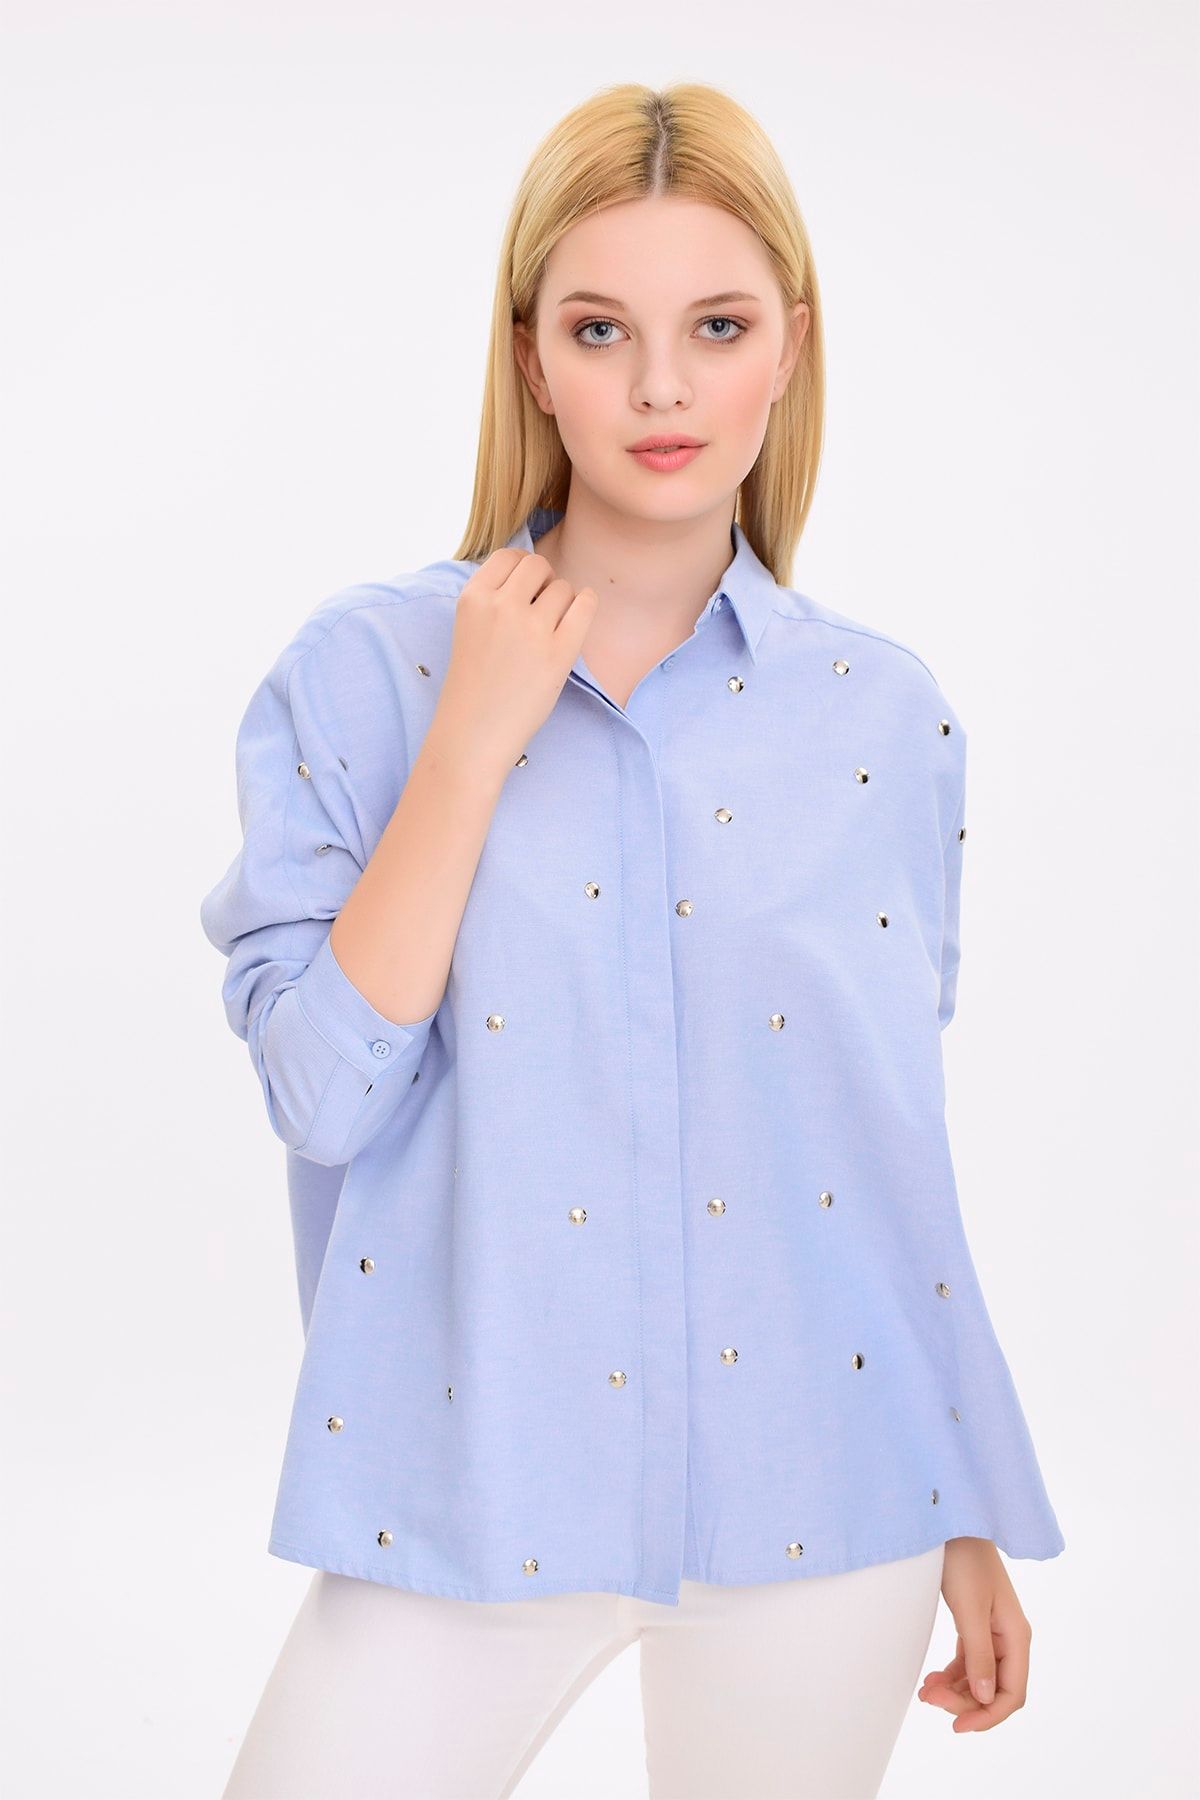 Hanna's Kadın Mavi Önü Taş Işlemeli Uzun Kollu Gömlek